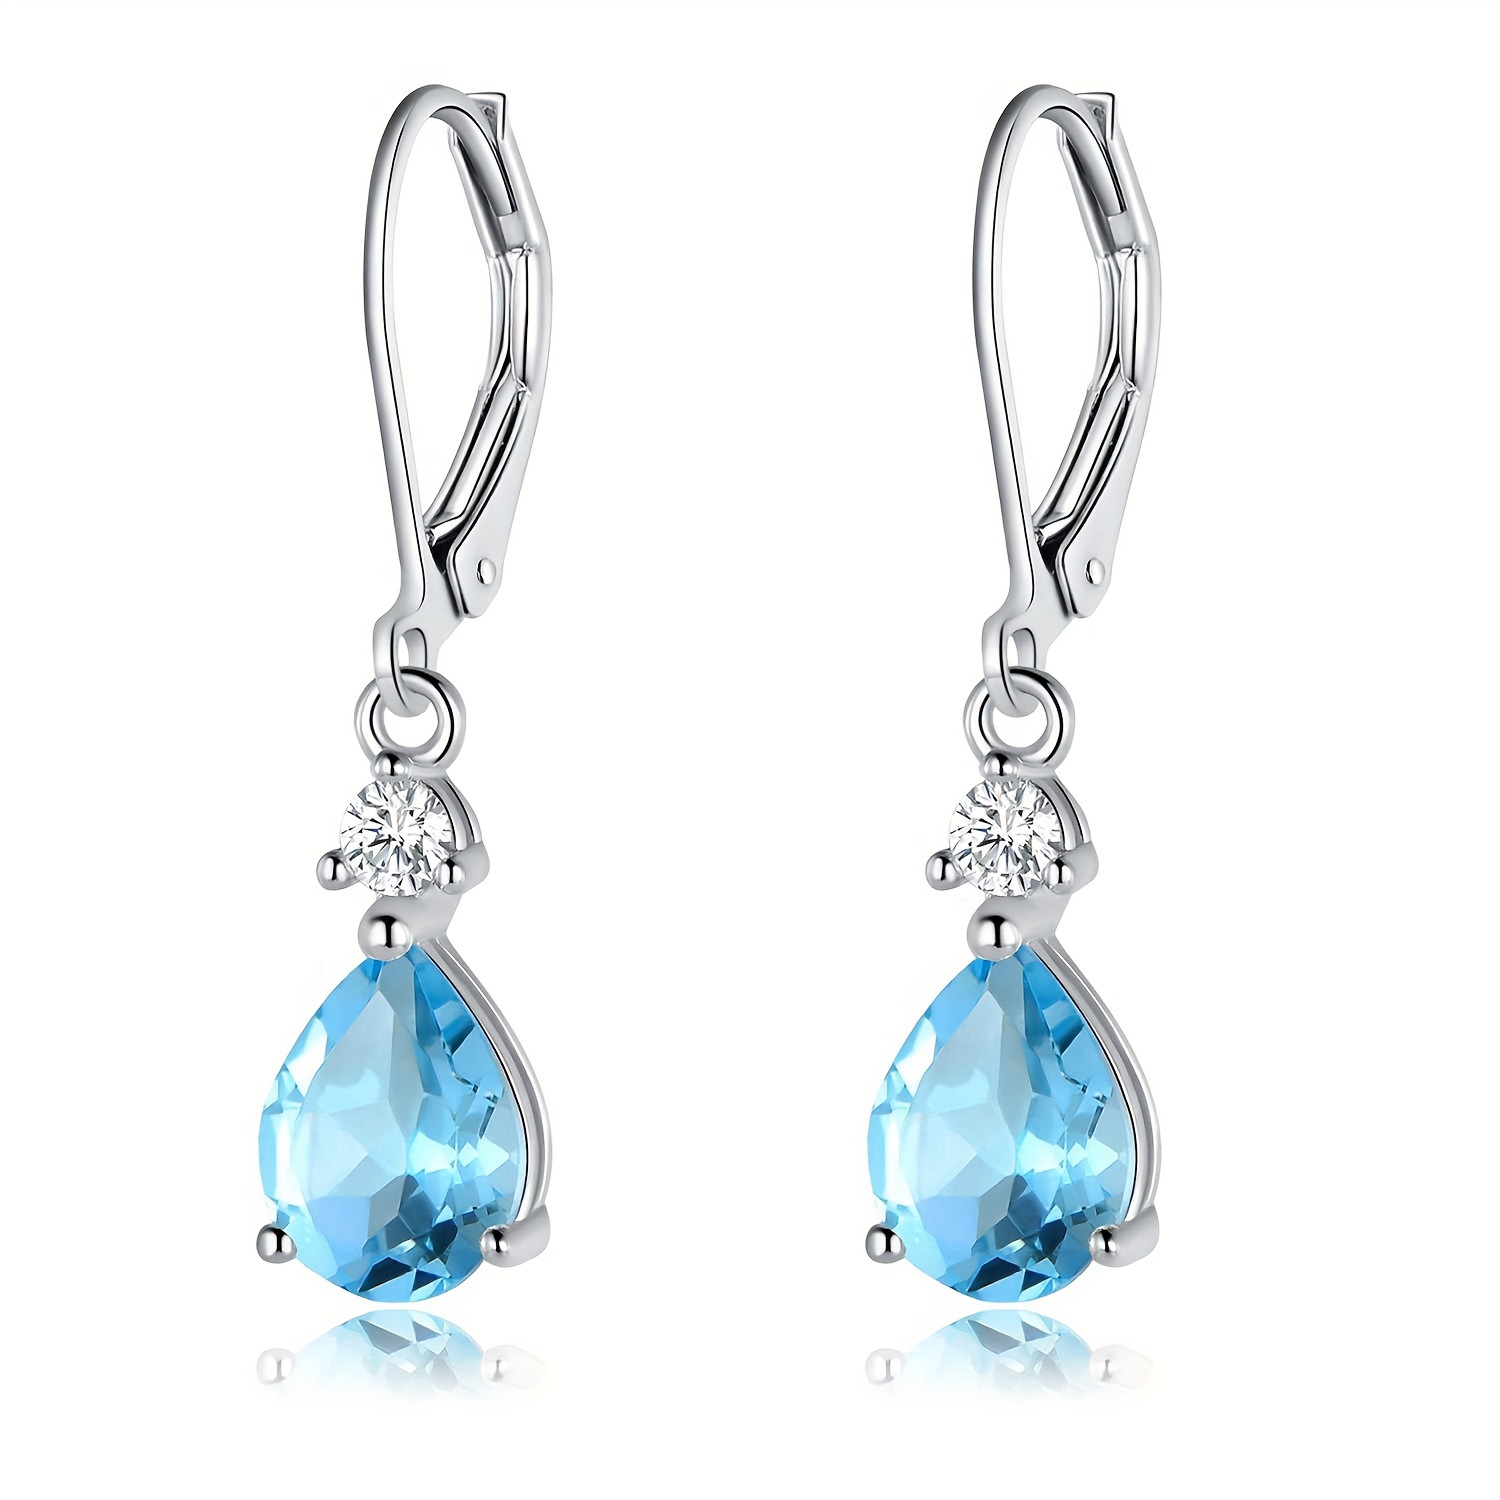 

925 Sterling Silver Blue Topaz/amethyst/rainbow Quartz Cz Teardrop Leverback Earrings Drop Dangly Gemstone Earings Hypoallergenic Birthday Jewelry Gifts For Women Girls